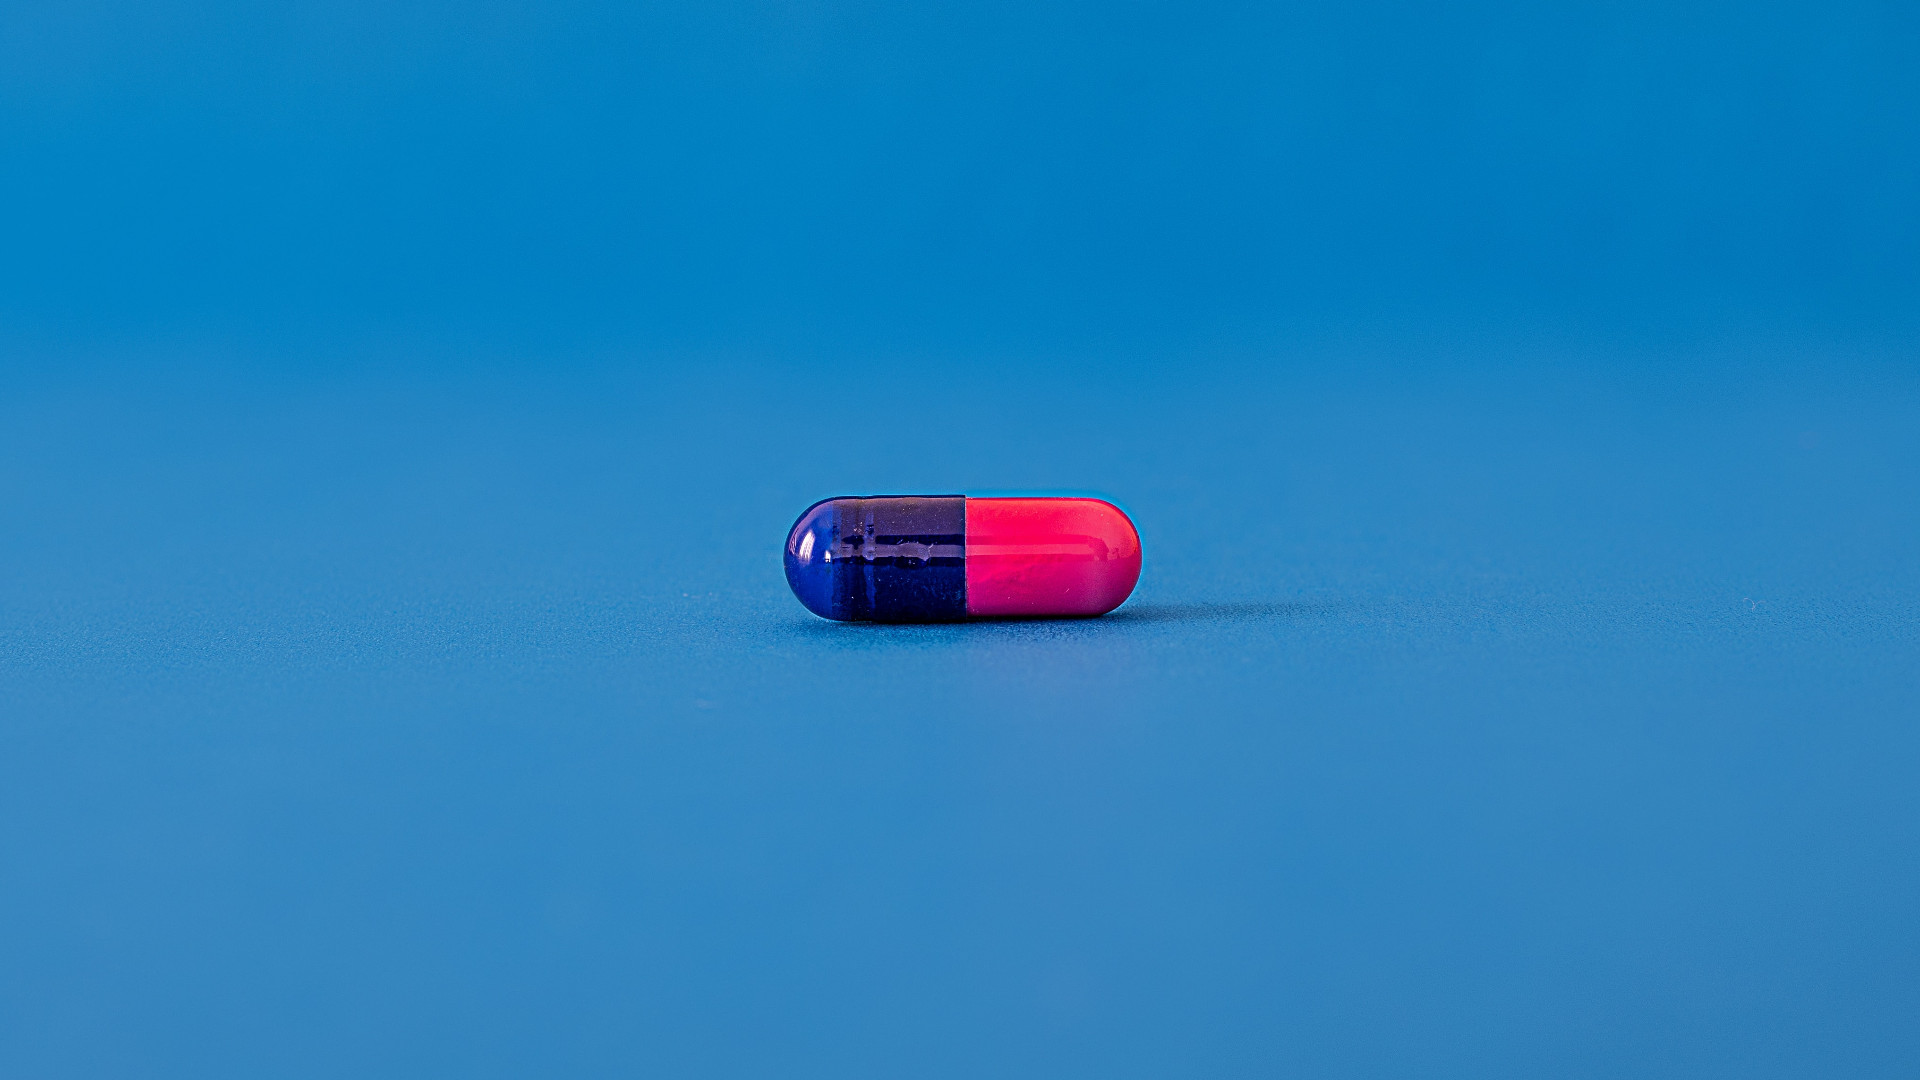 Foto de capa do artigo "Cefalexina: é antibiótico? Veja para que serve e como usar"